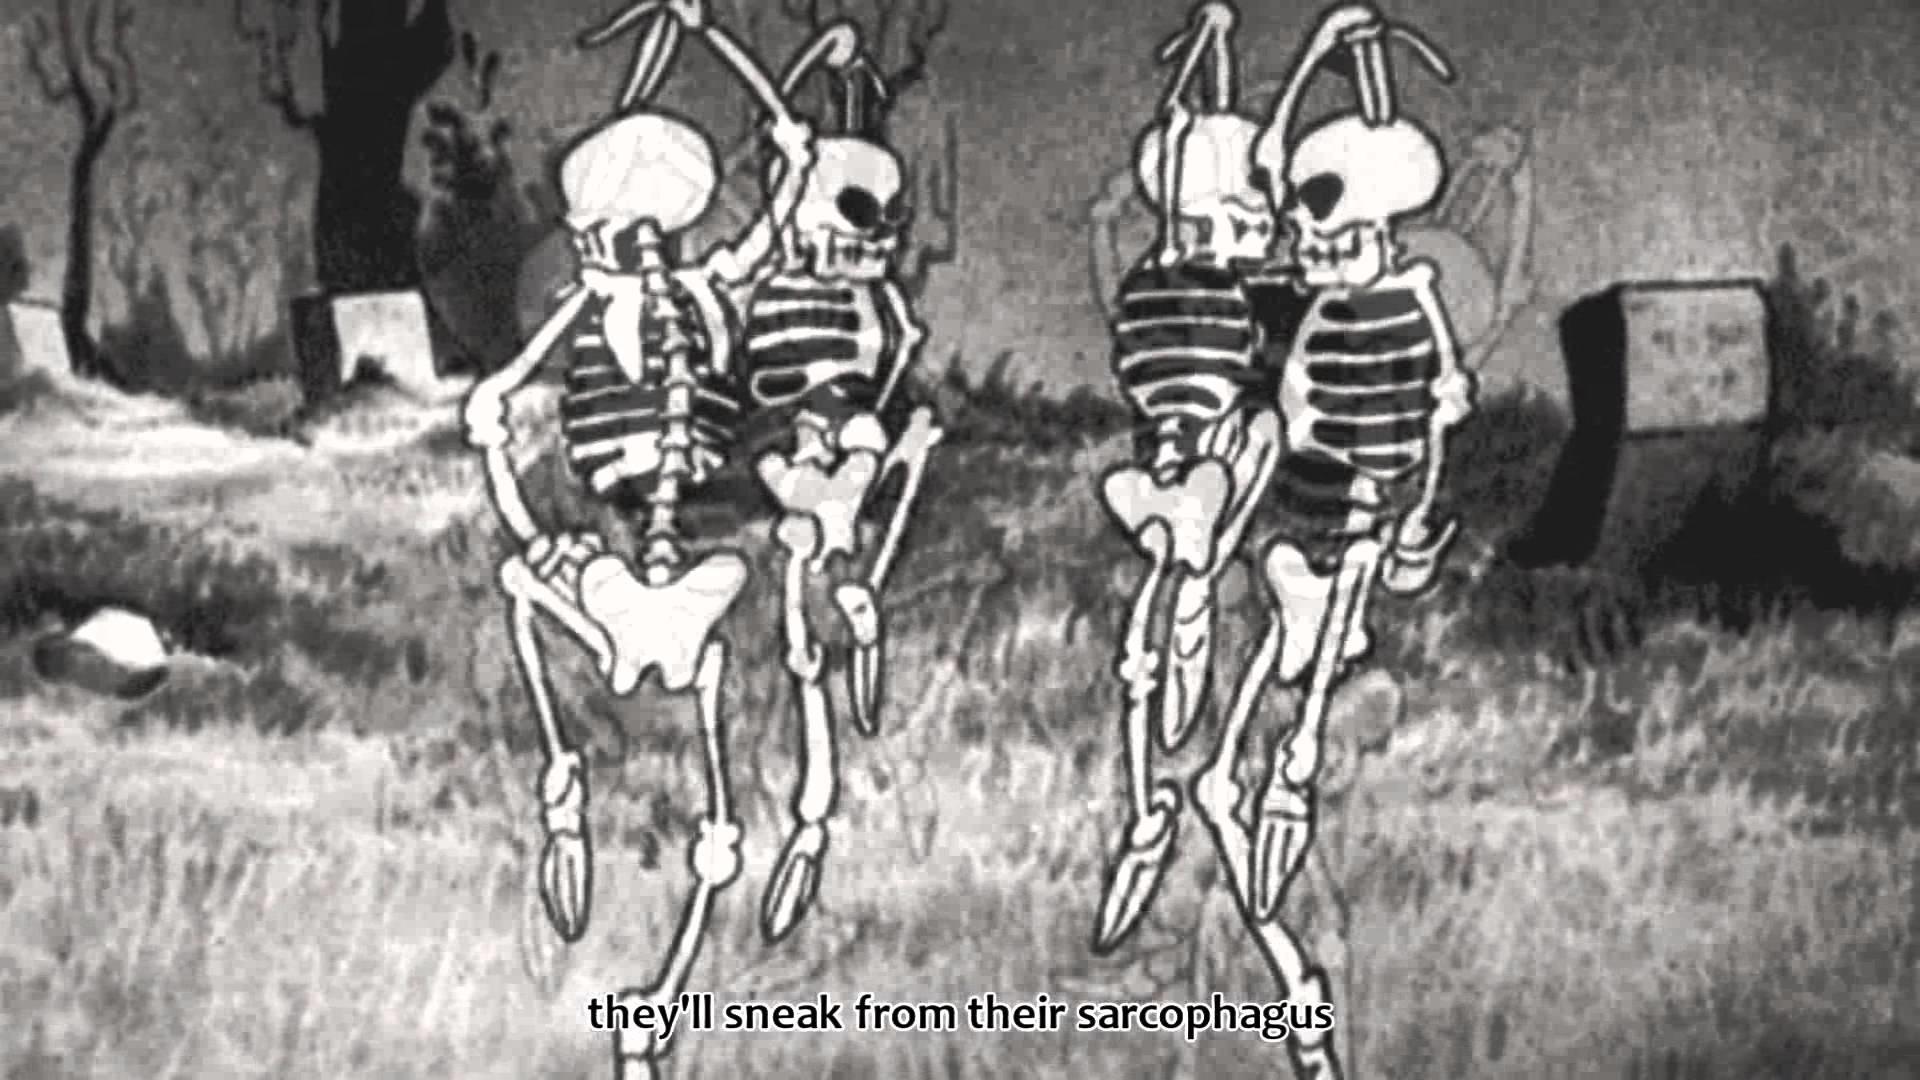 Skeleton Knight Arc Finally Reveal His Secret To Ariane - Anime Recap -  BiliBili